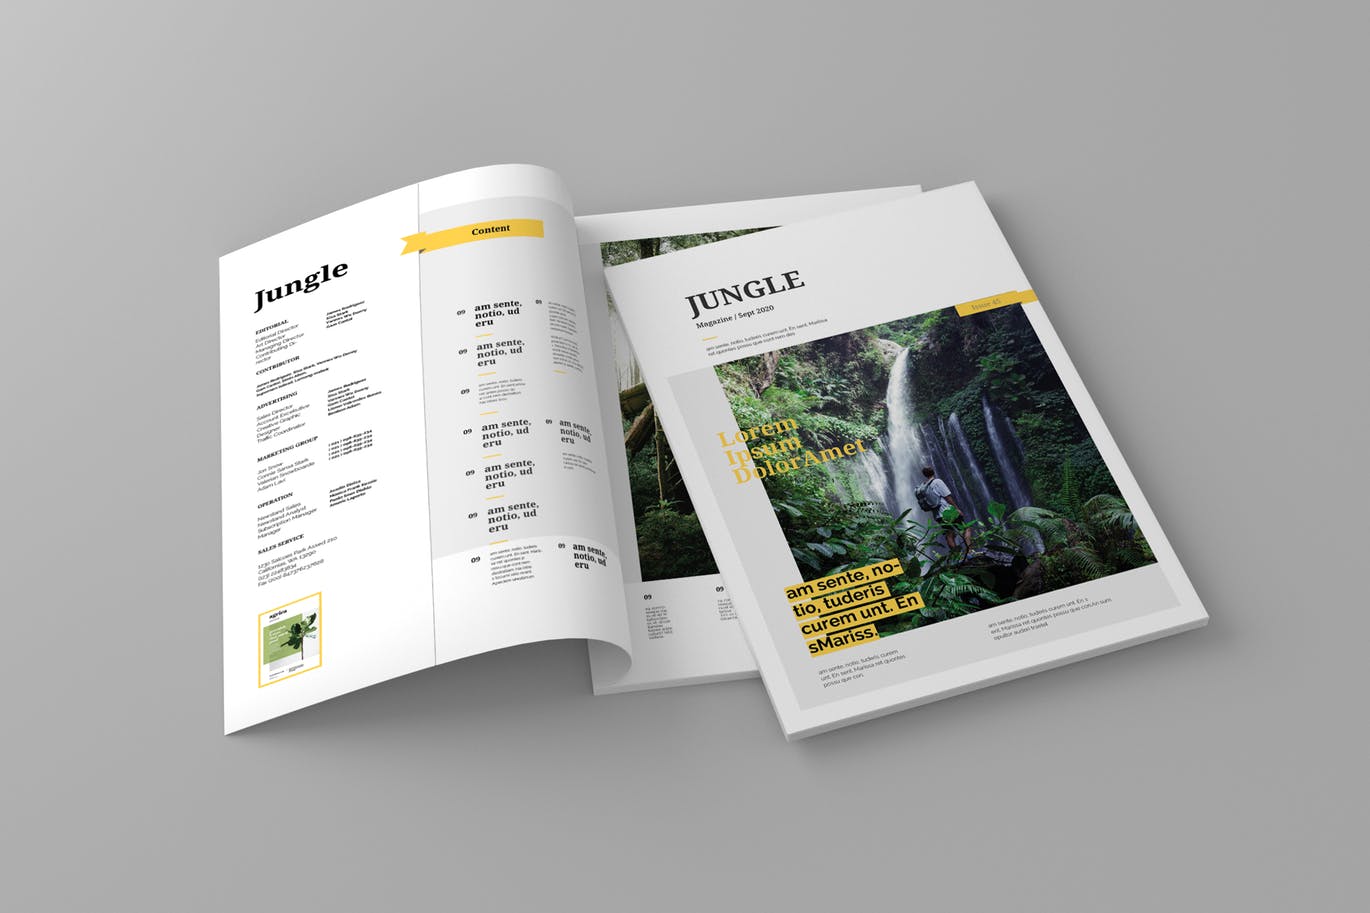 旅游行业素材库精选杂志版式设计模板 Jungle – Magazine Template插图